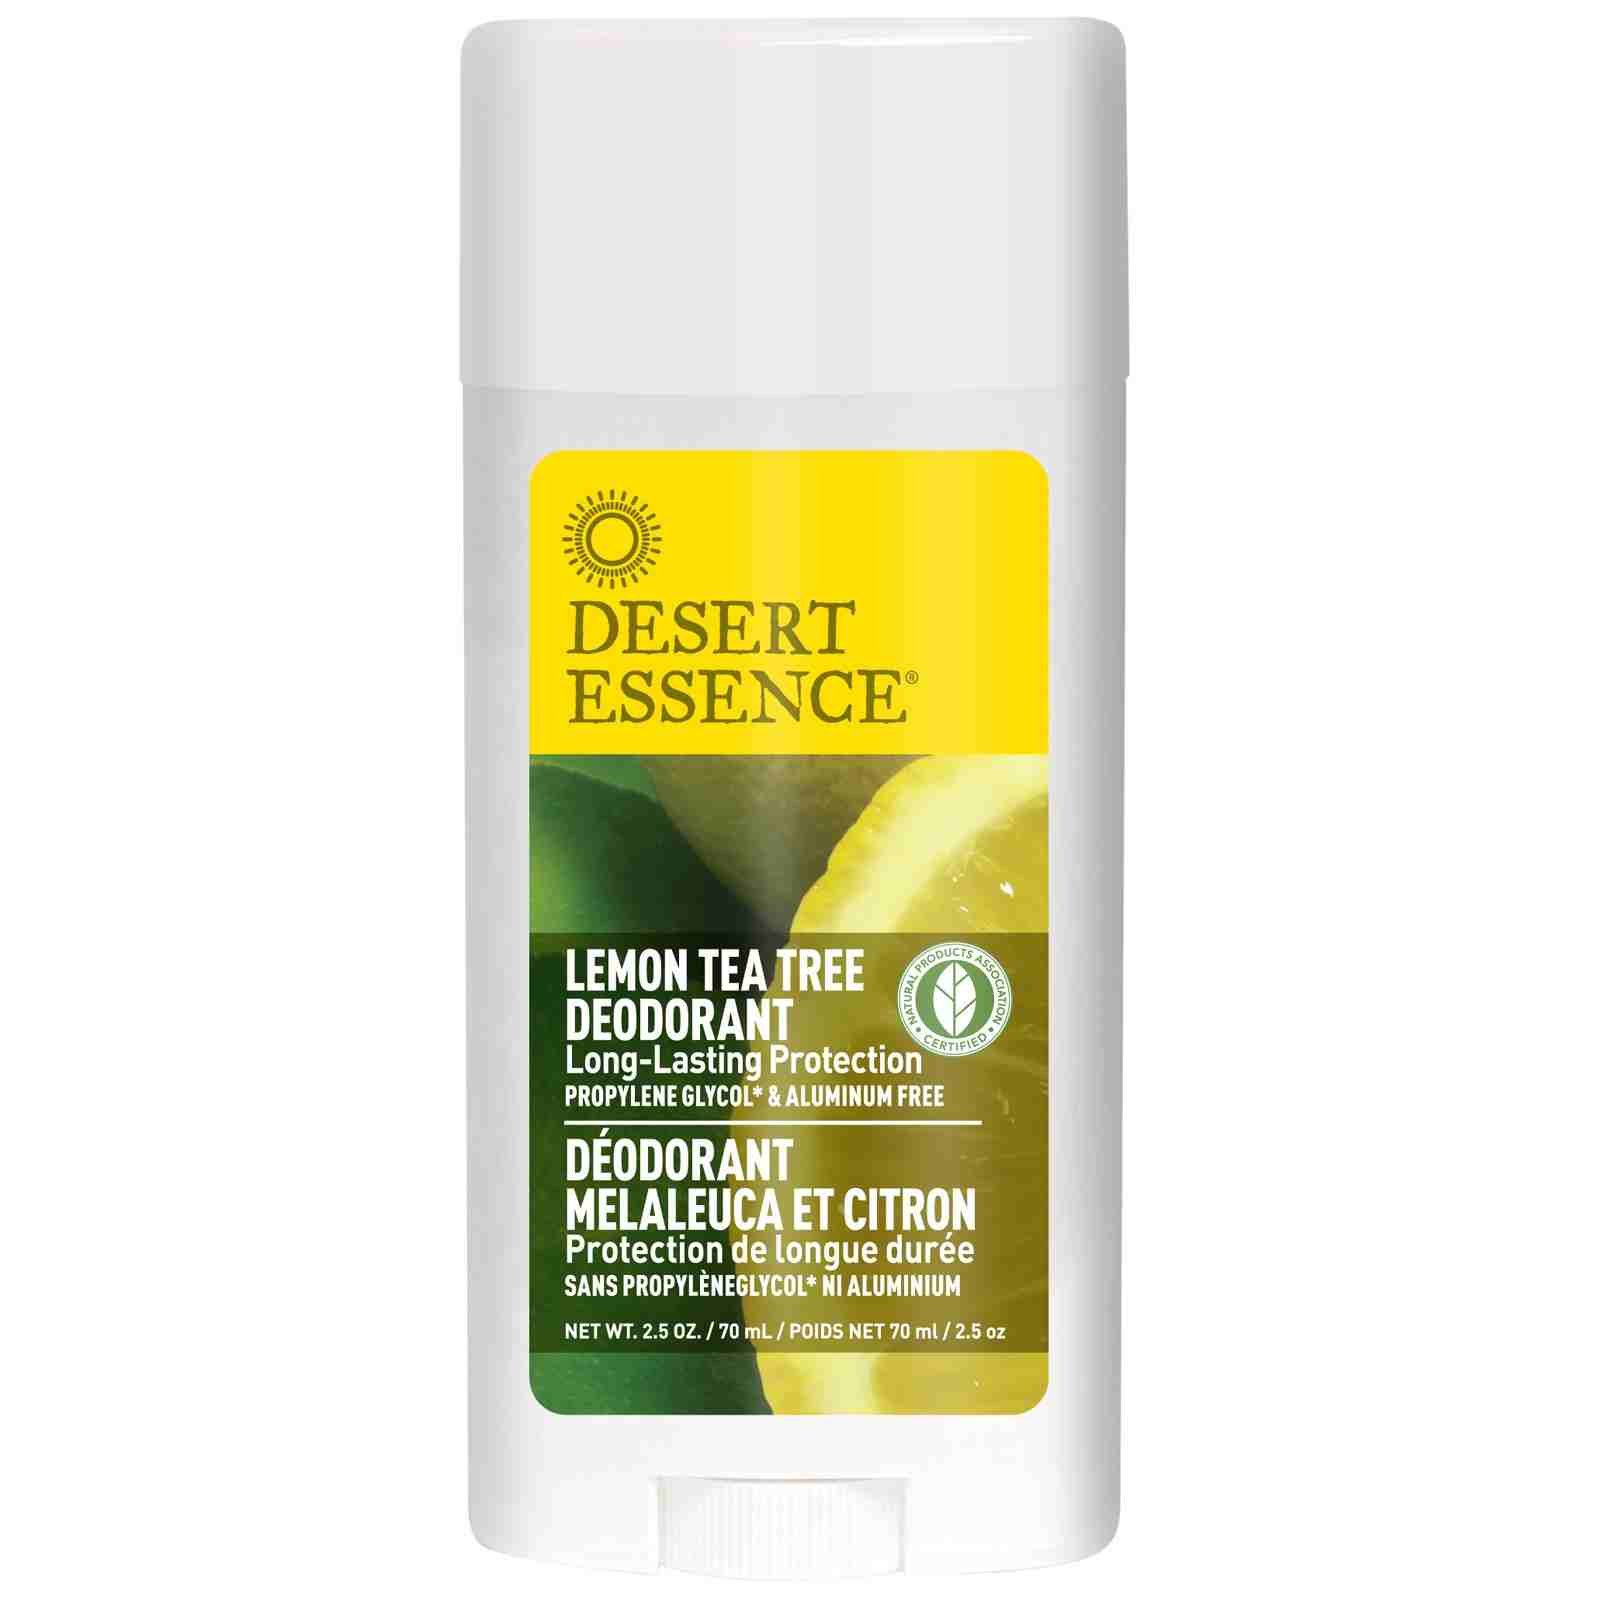 Dessert Essence Lemon Tea Tree Deodorant (Unique Natural Scent)